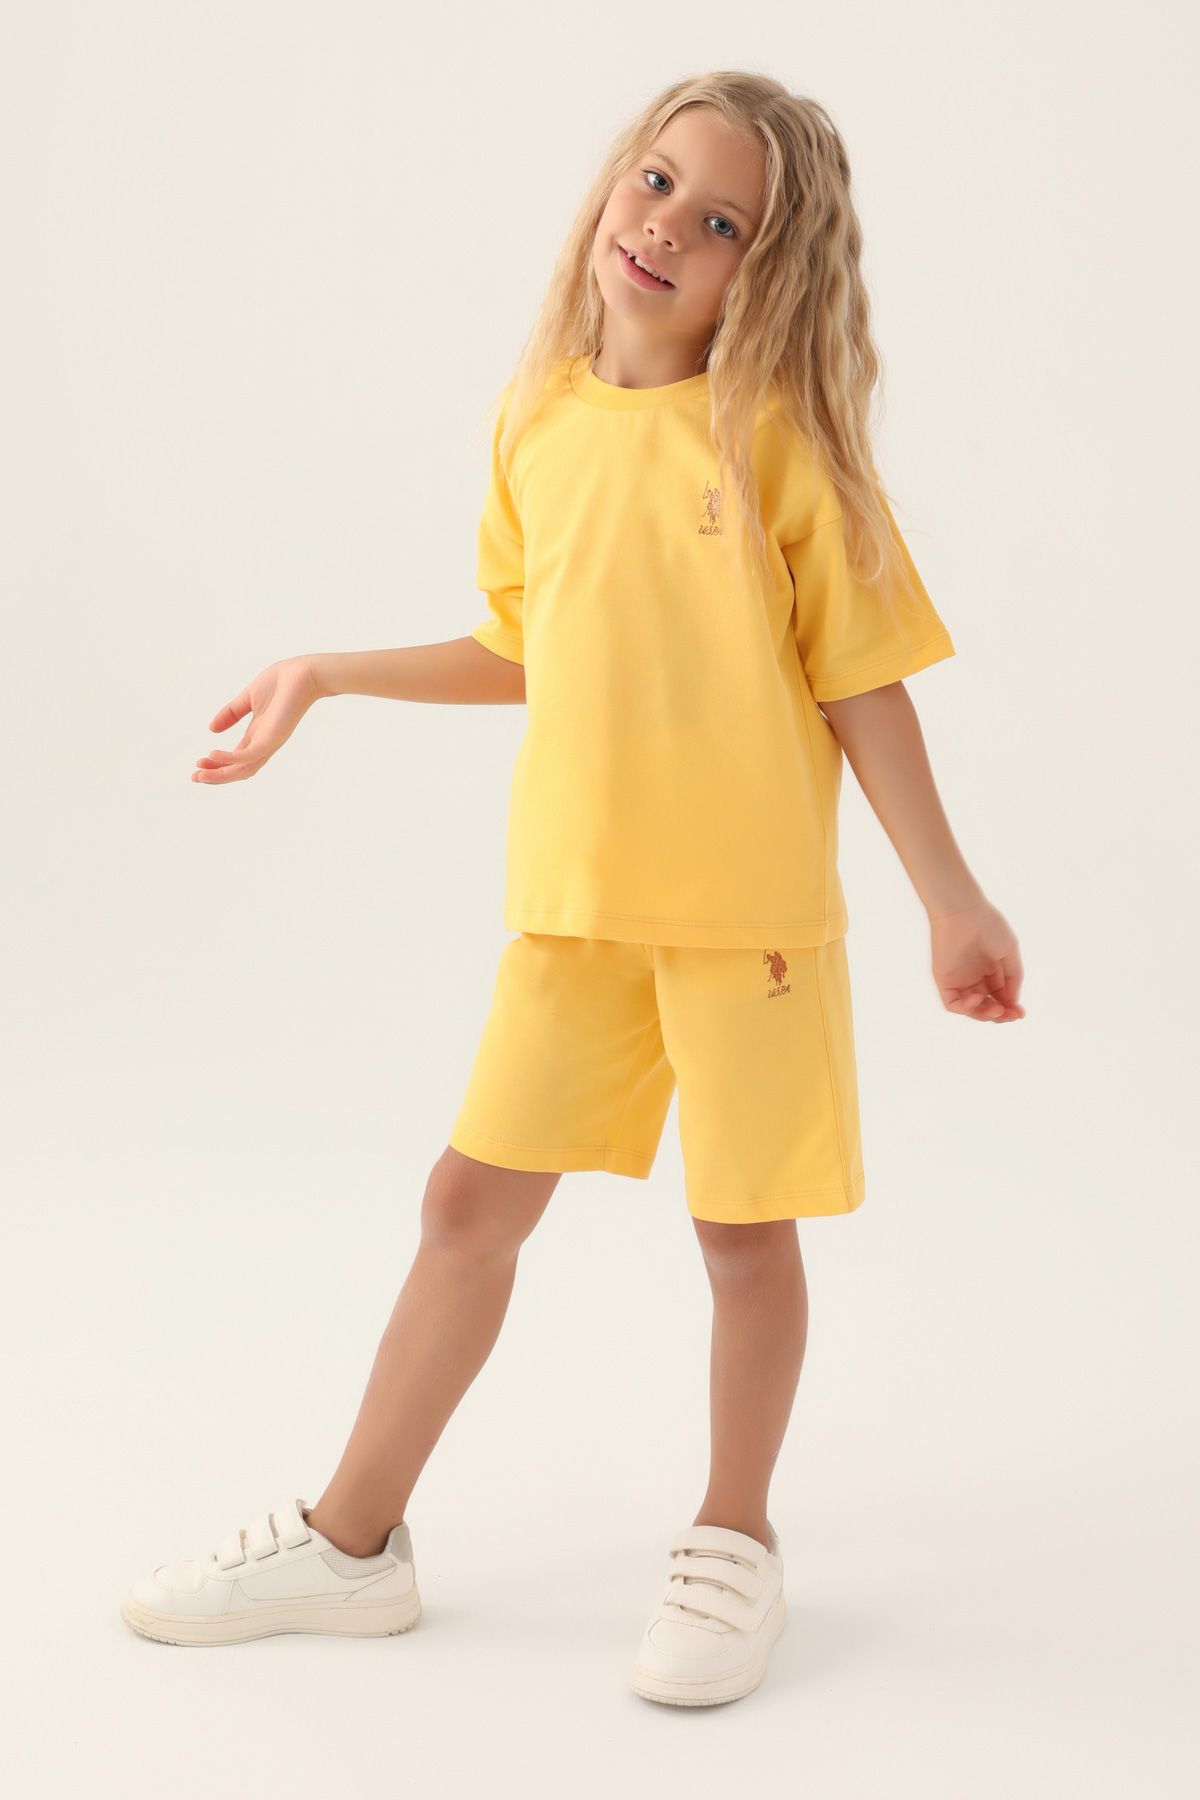 Костюм повседневный детский U.S. POLO Assn. US1822-V1, желтый, 110 костюм повседневный детский u s polo assn us1822 v1 розовая пудра 158